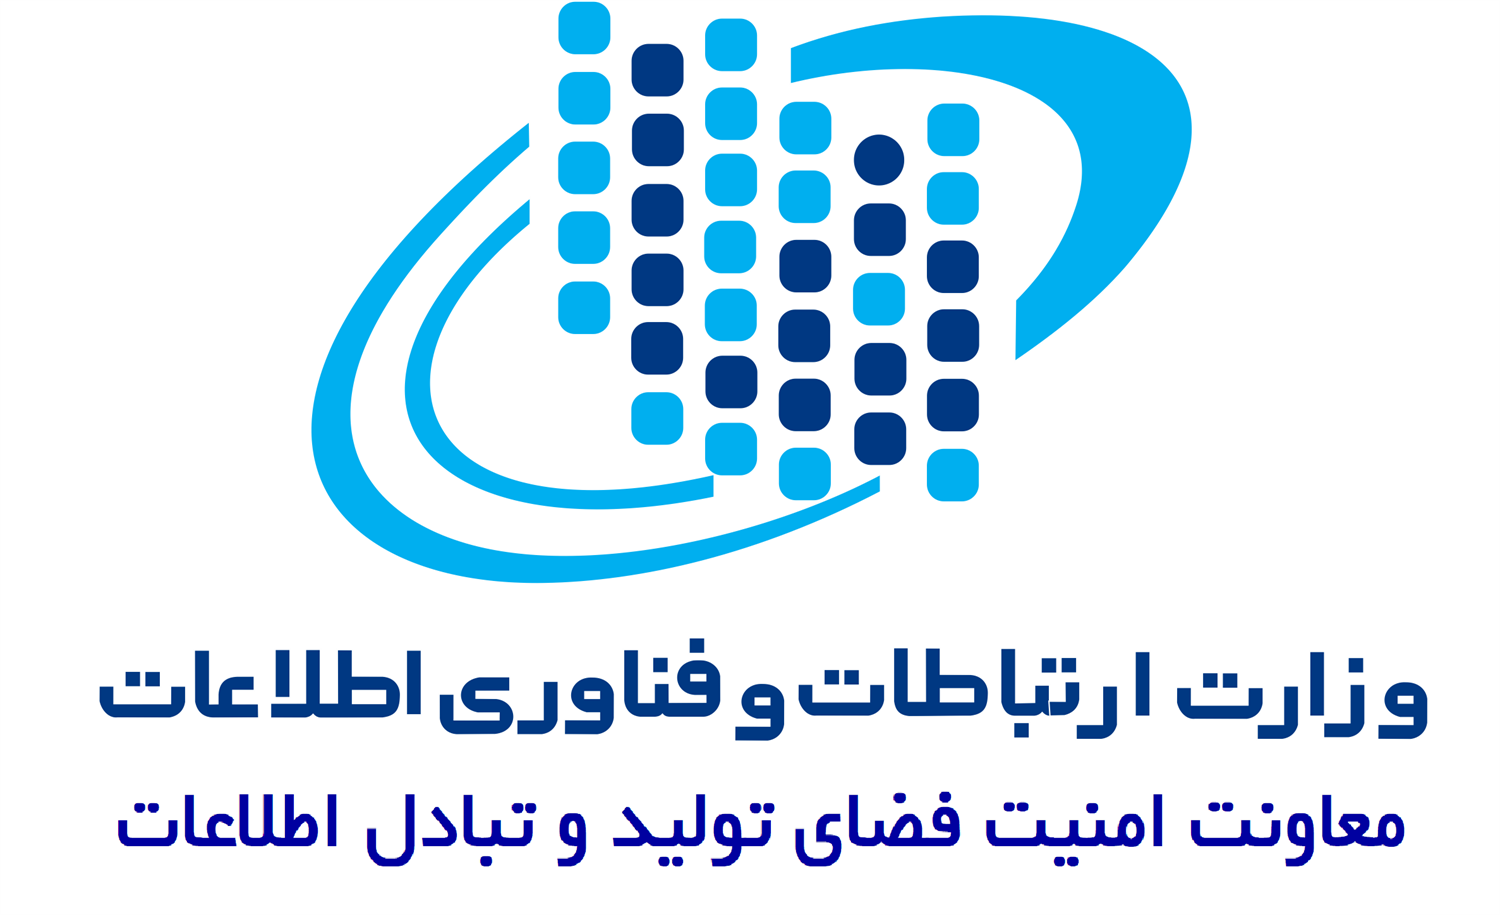 فارس مقام دوم پروانه های صادر شده «افتا» در کشور را کسب کرد